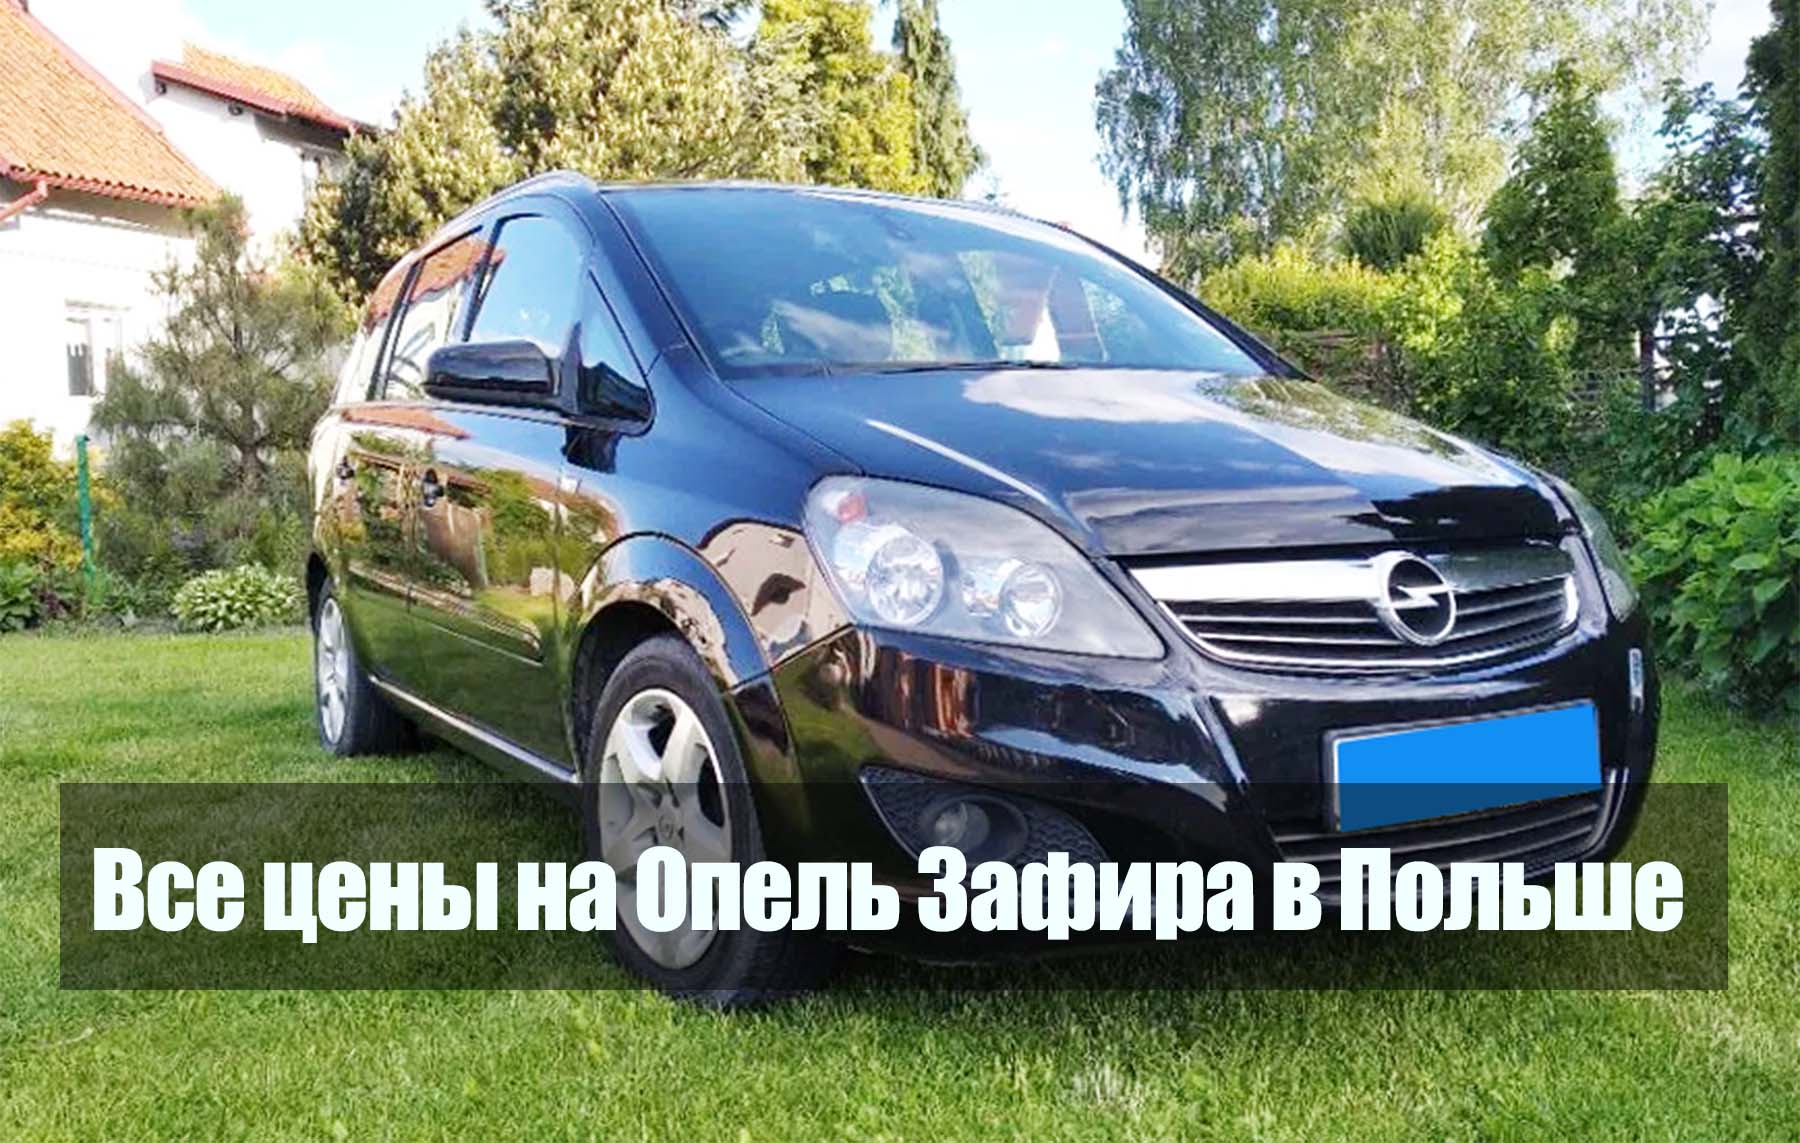 Opel Zafira-e Kinabuhi. Unsang kagamitan? Ang sakyanan gibaligya na sa Poland